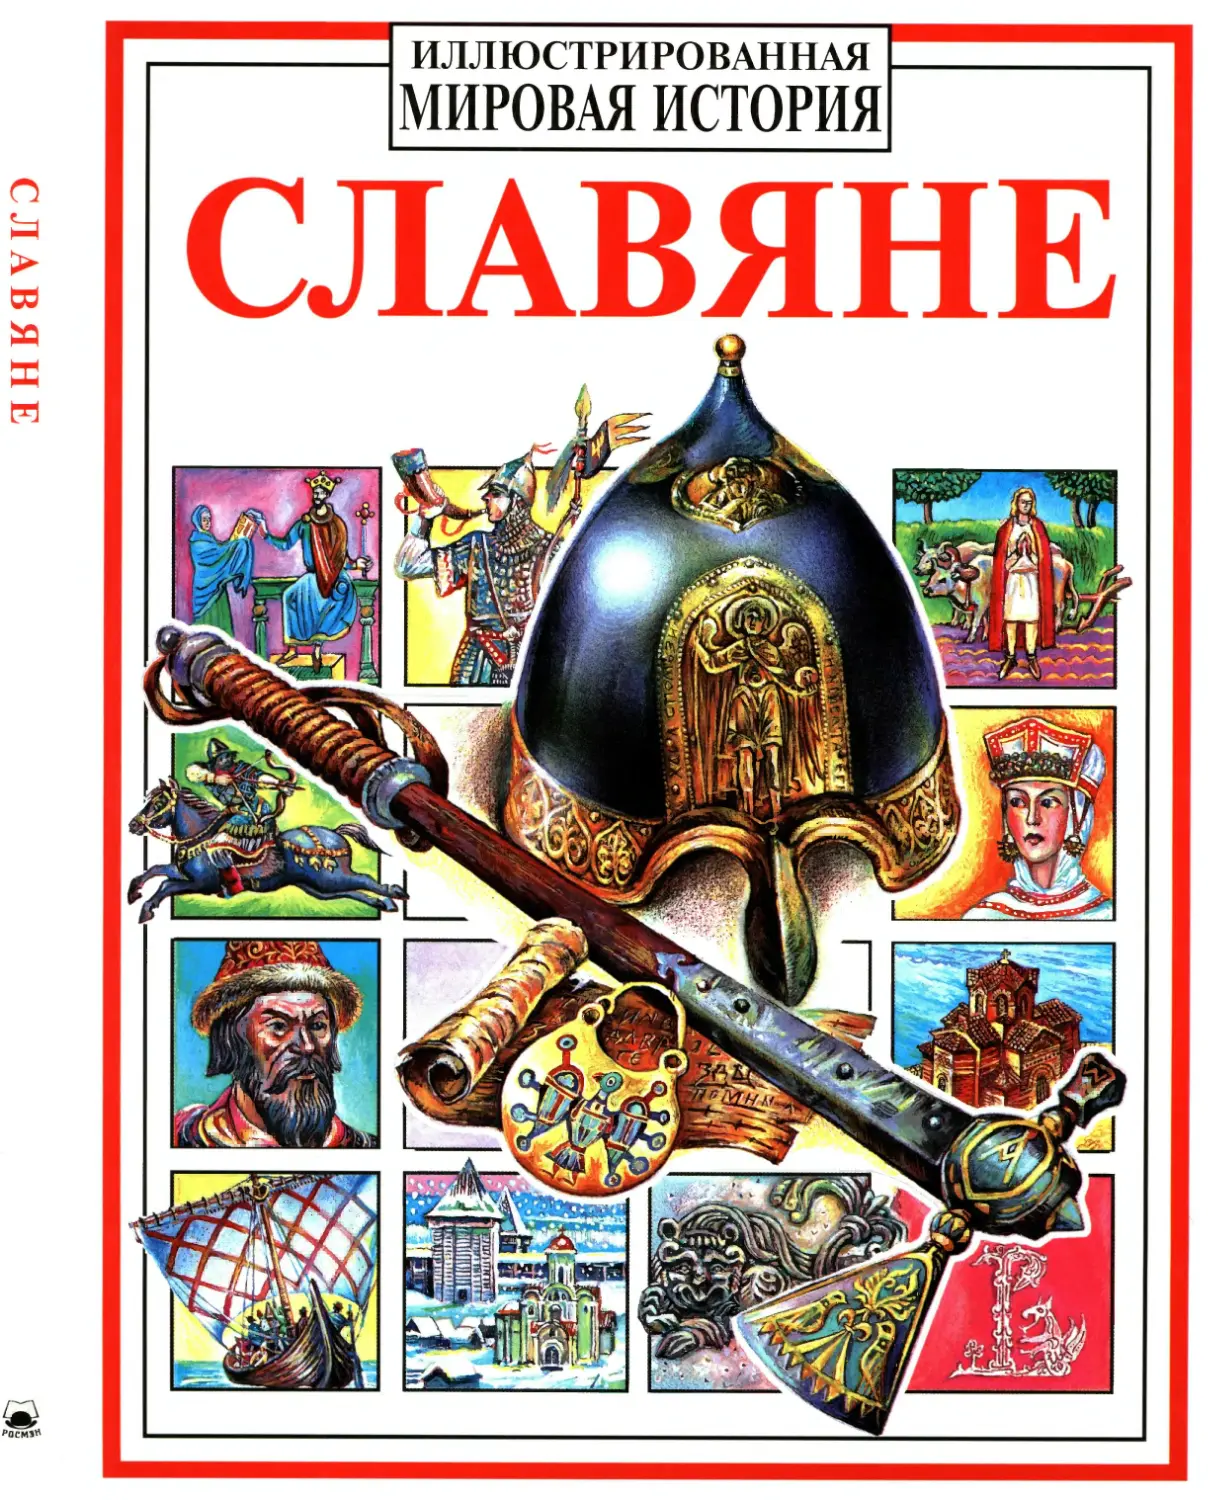 Петрухин Владимир. Славяне. 1998